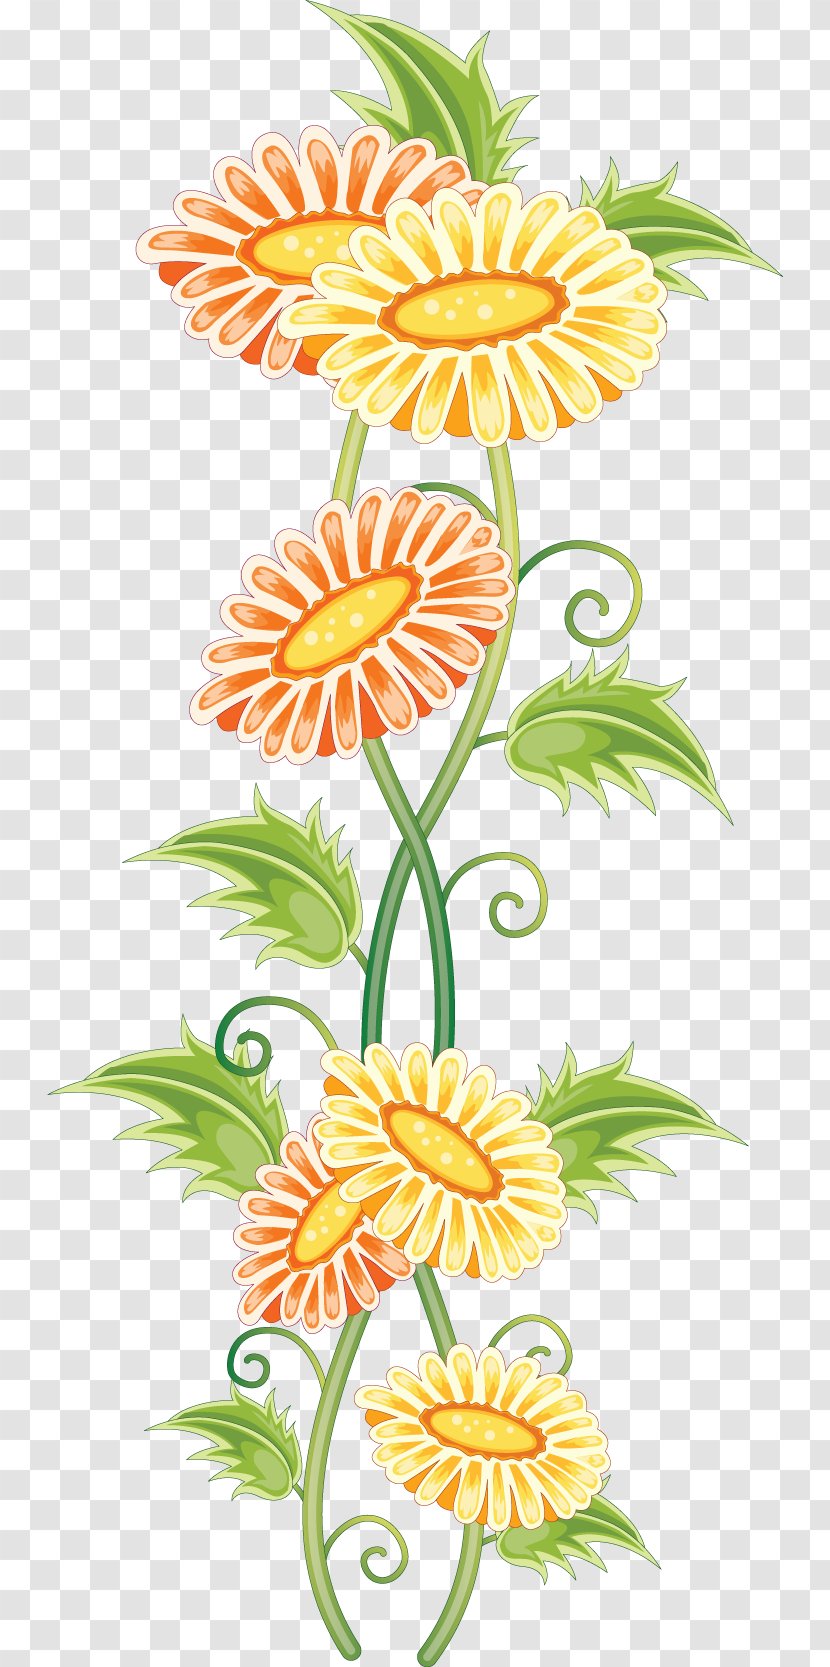 Flower Ornament Floral Design Clip Art - Digital Image - Green Transparent PNG